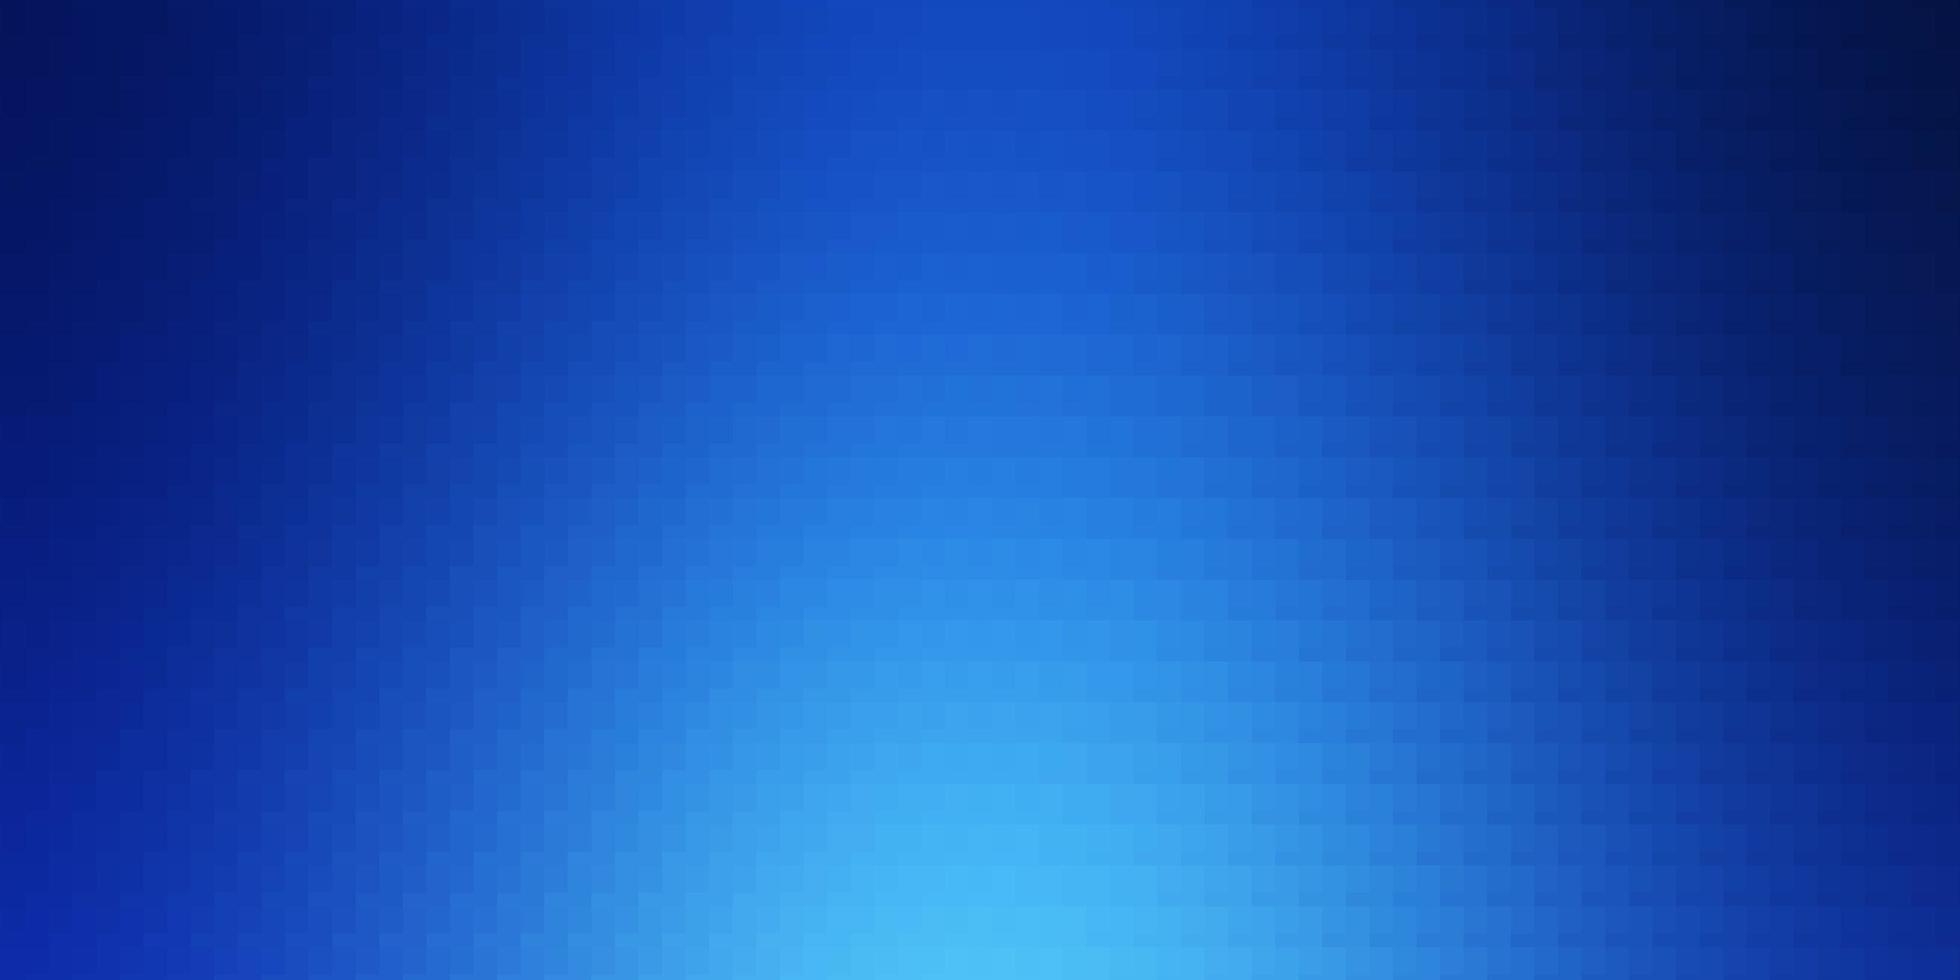 Fondo de vector azul claro con ilustración de rectángulos con un conjunto de patrón de rectángulos degradados para folletos de folletos de negocios